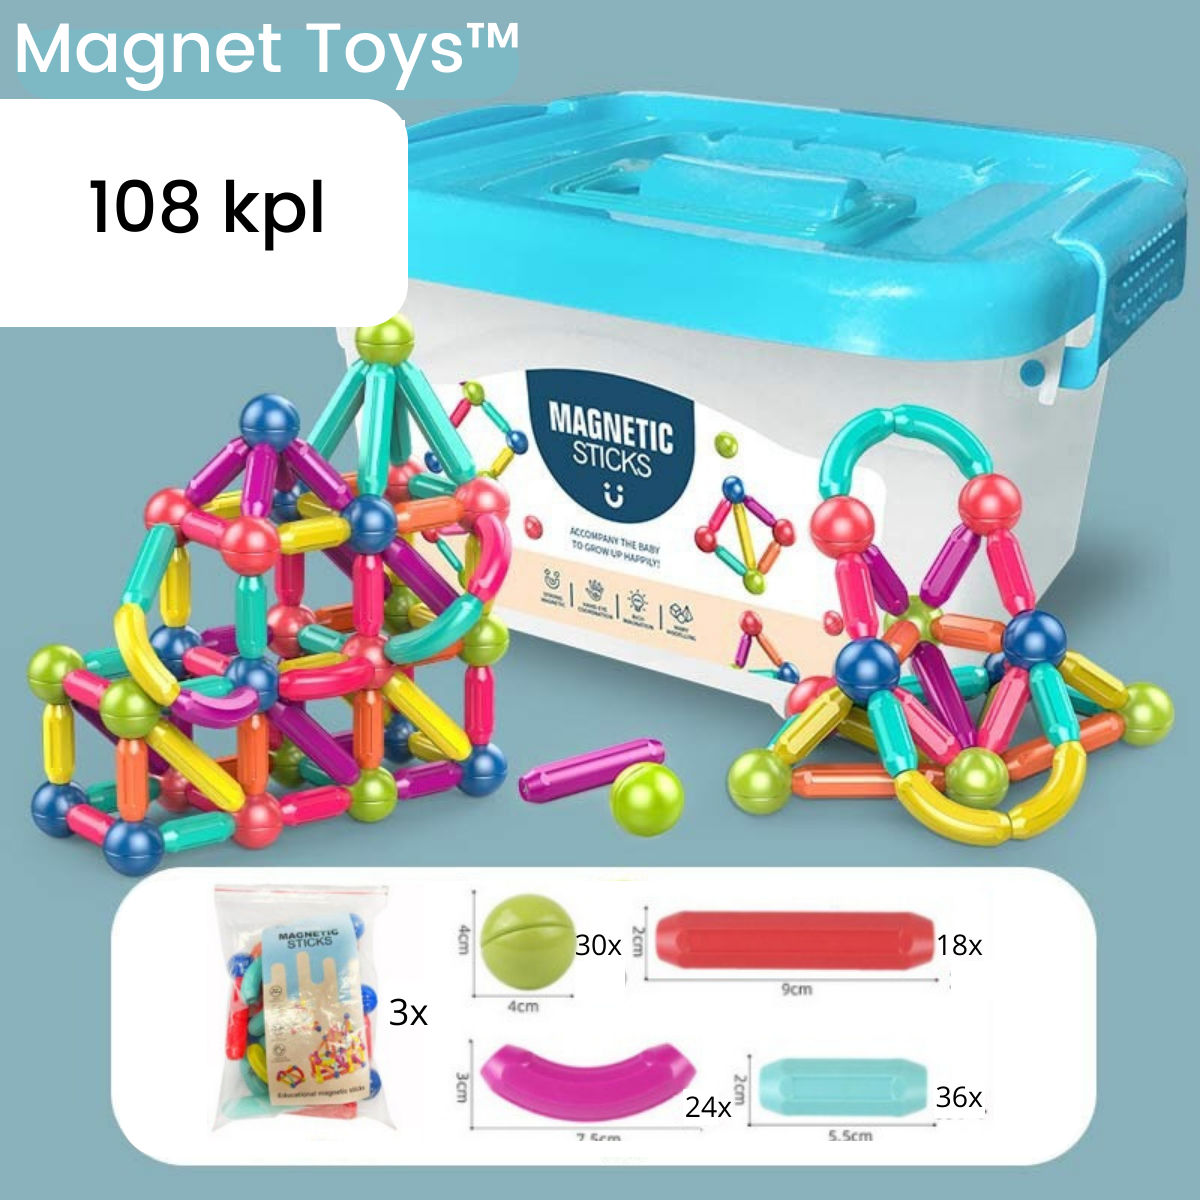 Magnet Toys™ - Luovuuden kehittäminen - Magneettikepit